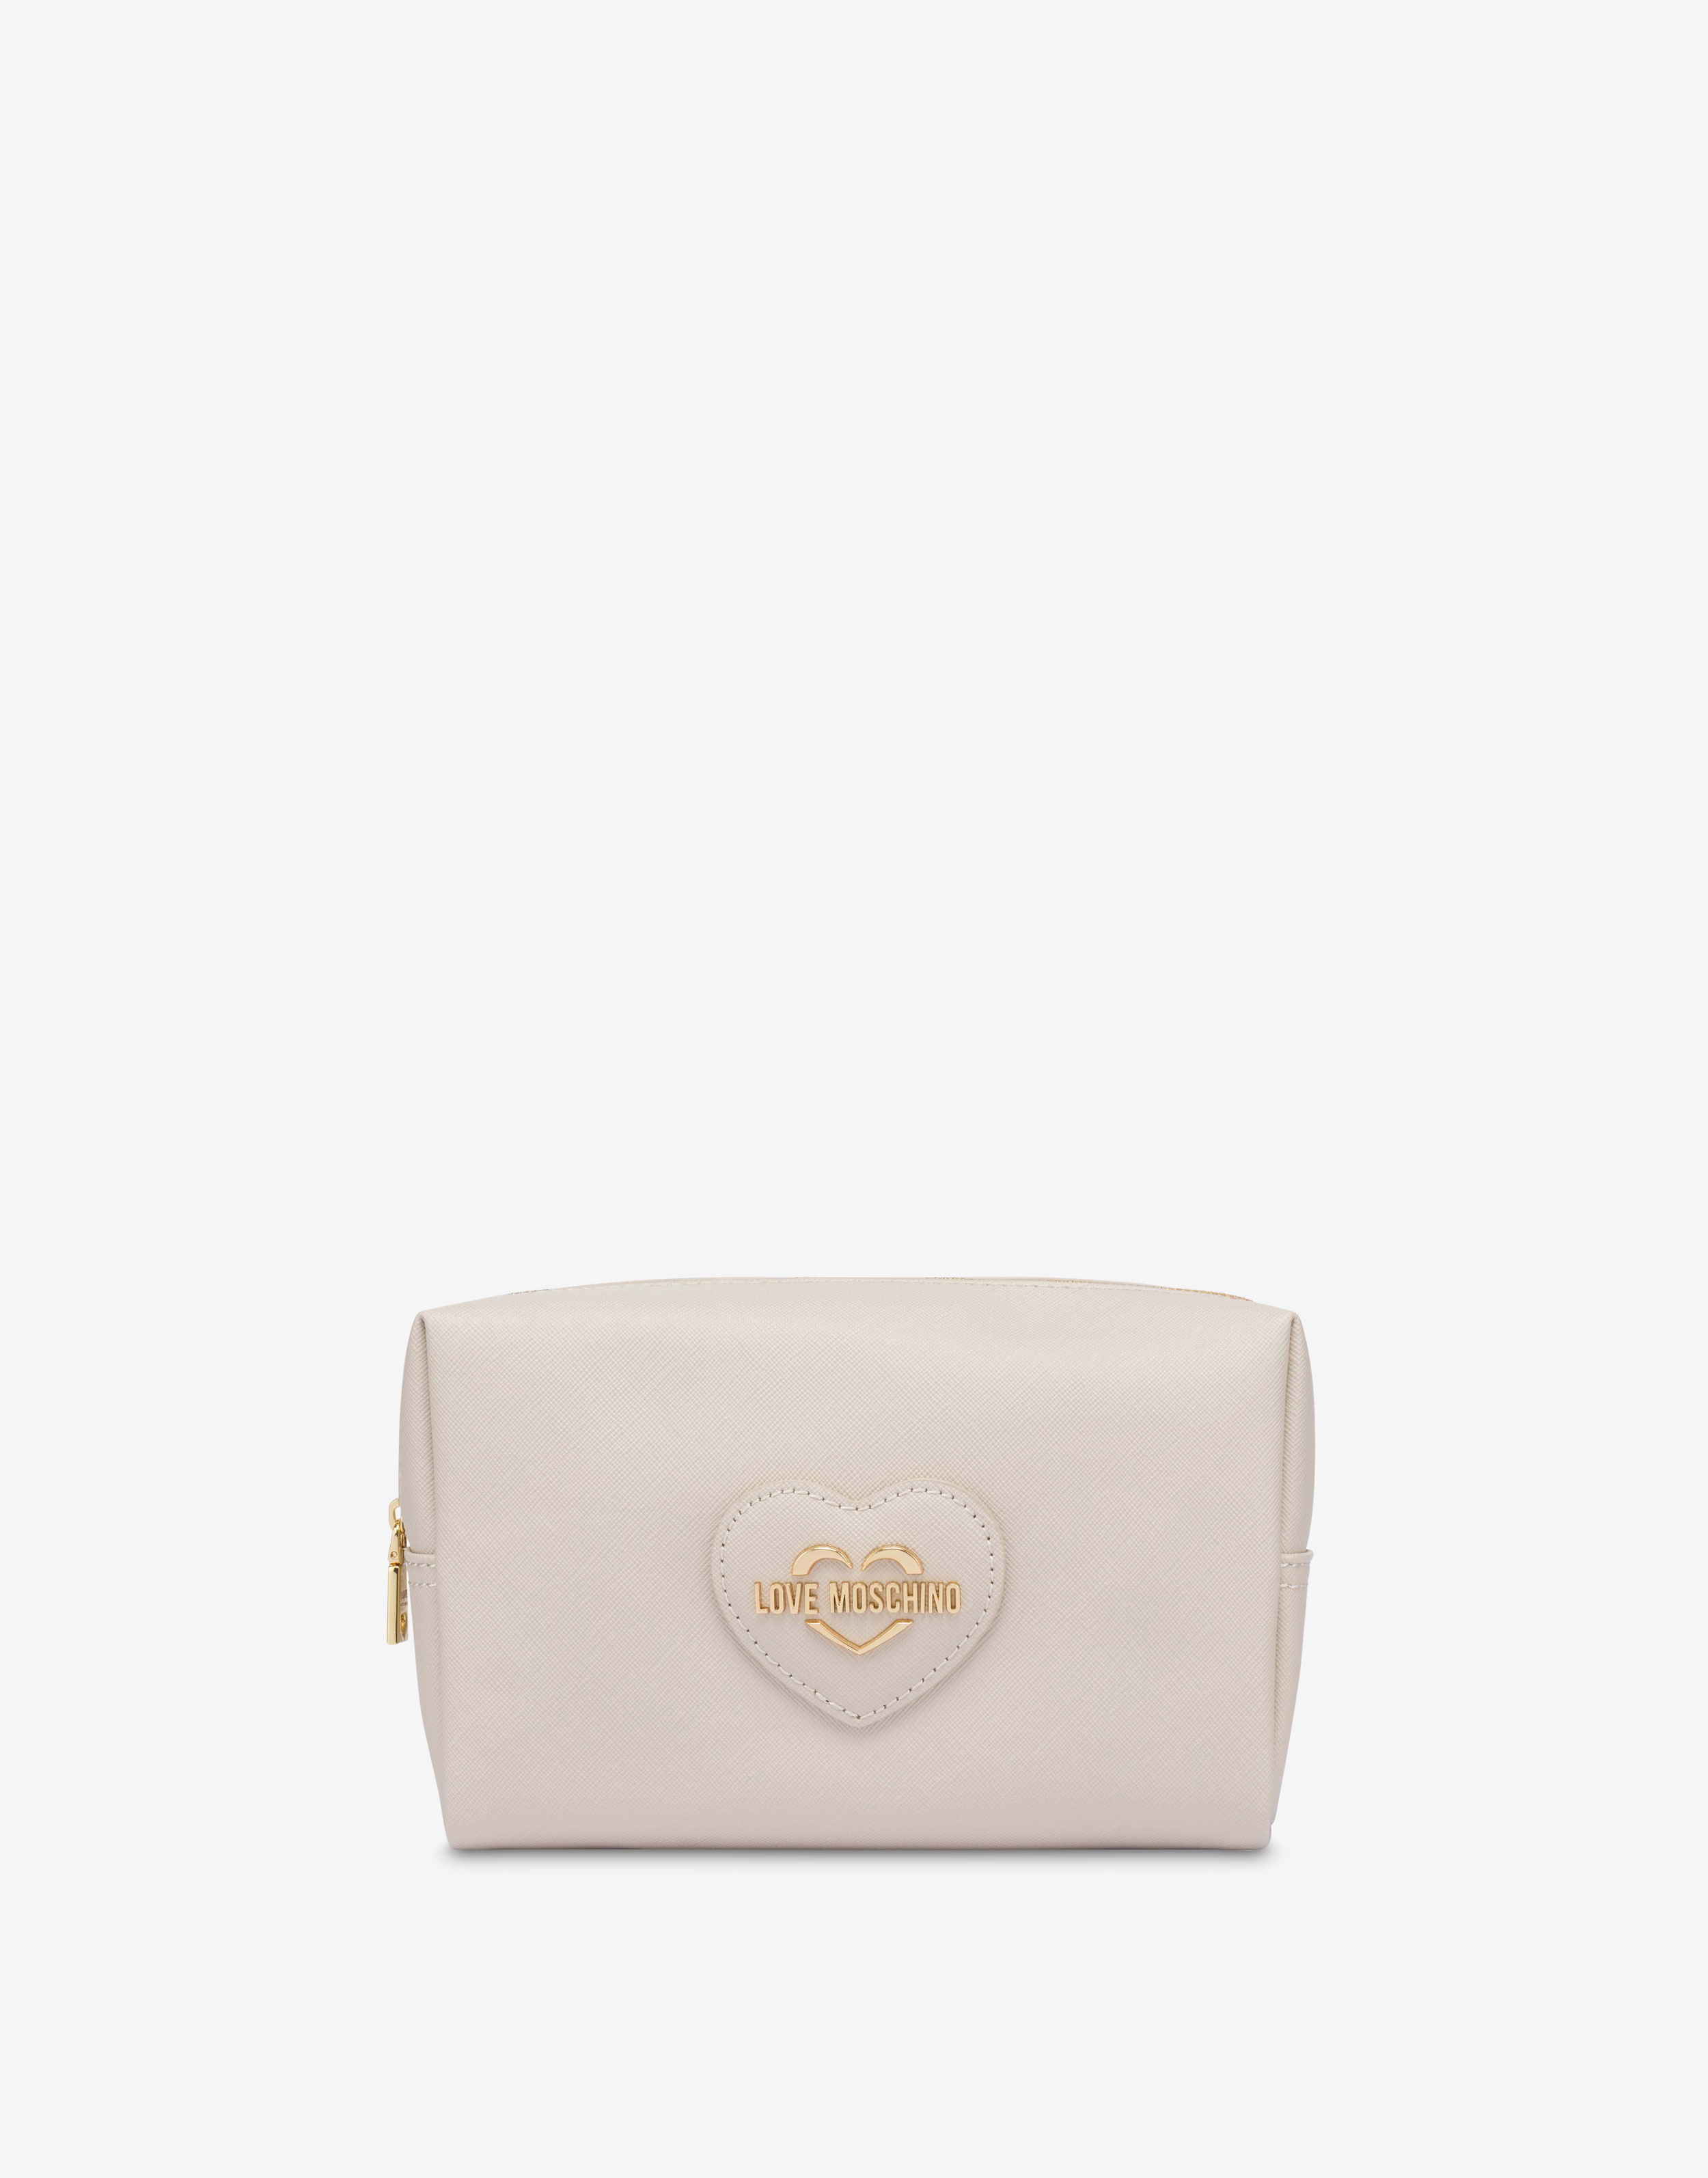 Handbags Moschino, Style code: 7532-8002-1222